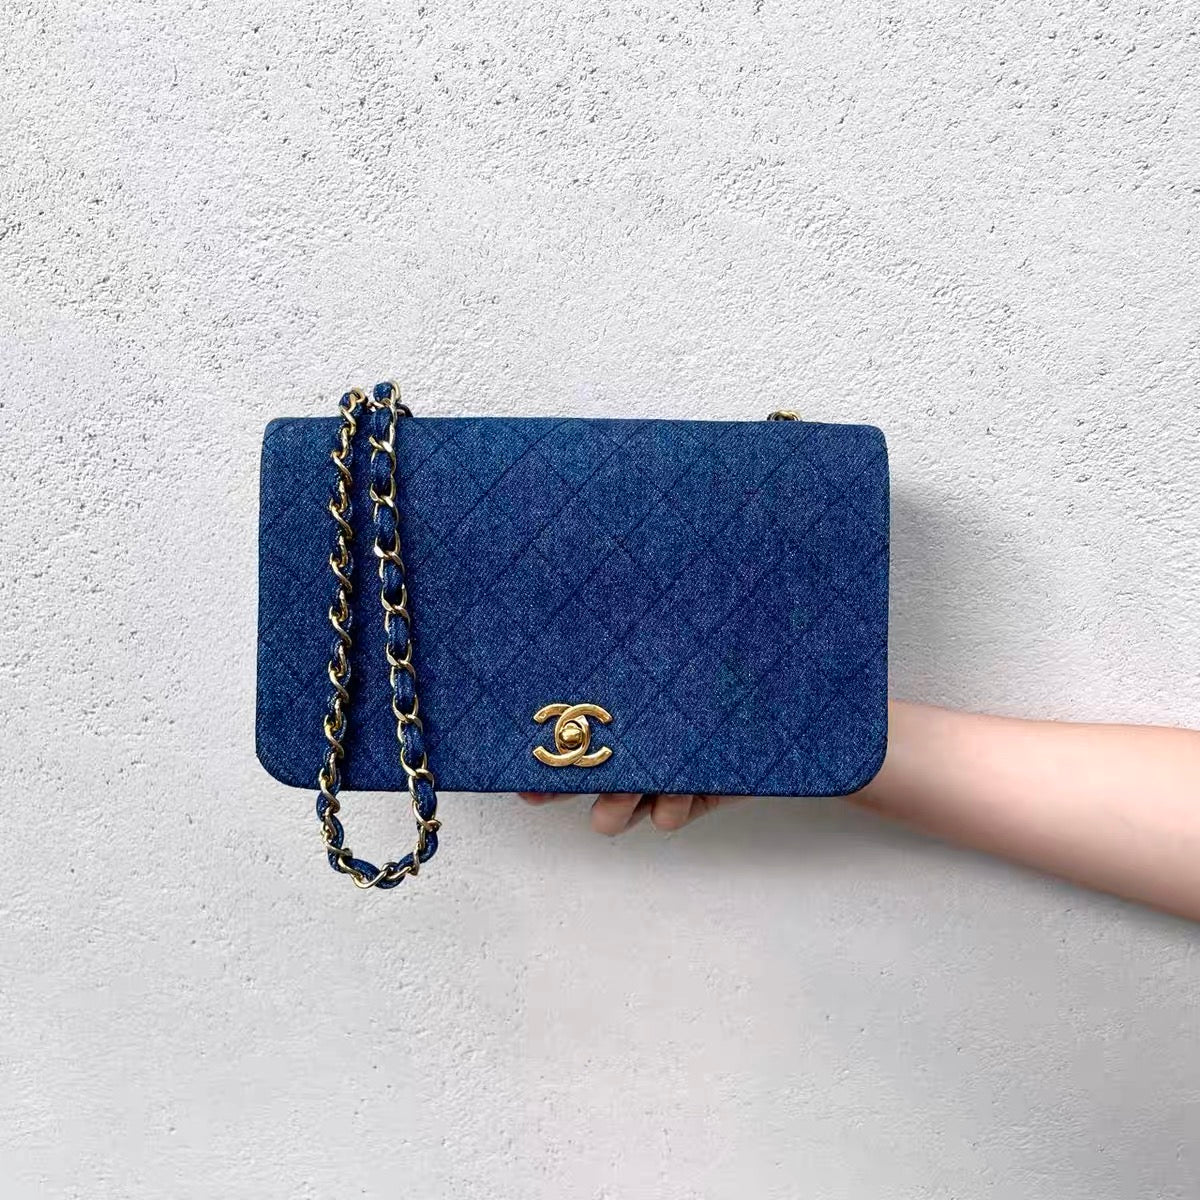 Chanel Pre-owned Medium Boy Chanel Shoulder Bag - Blue